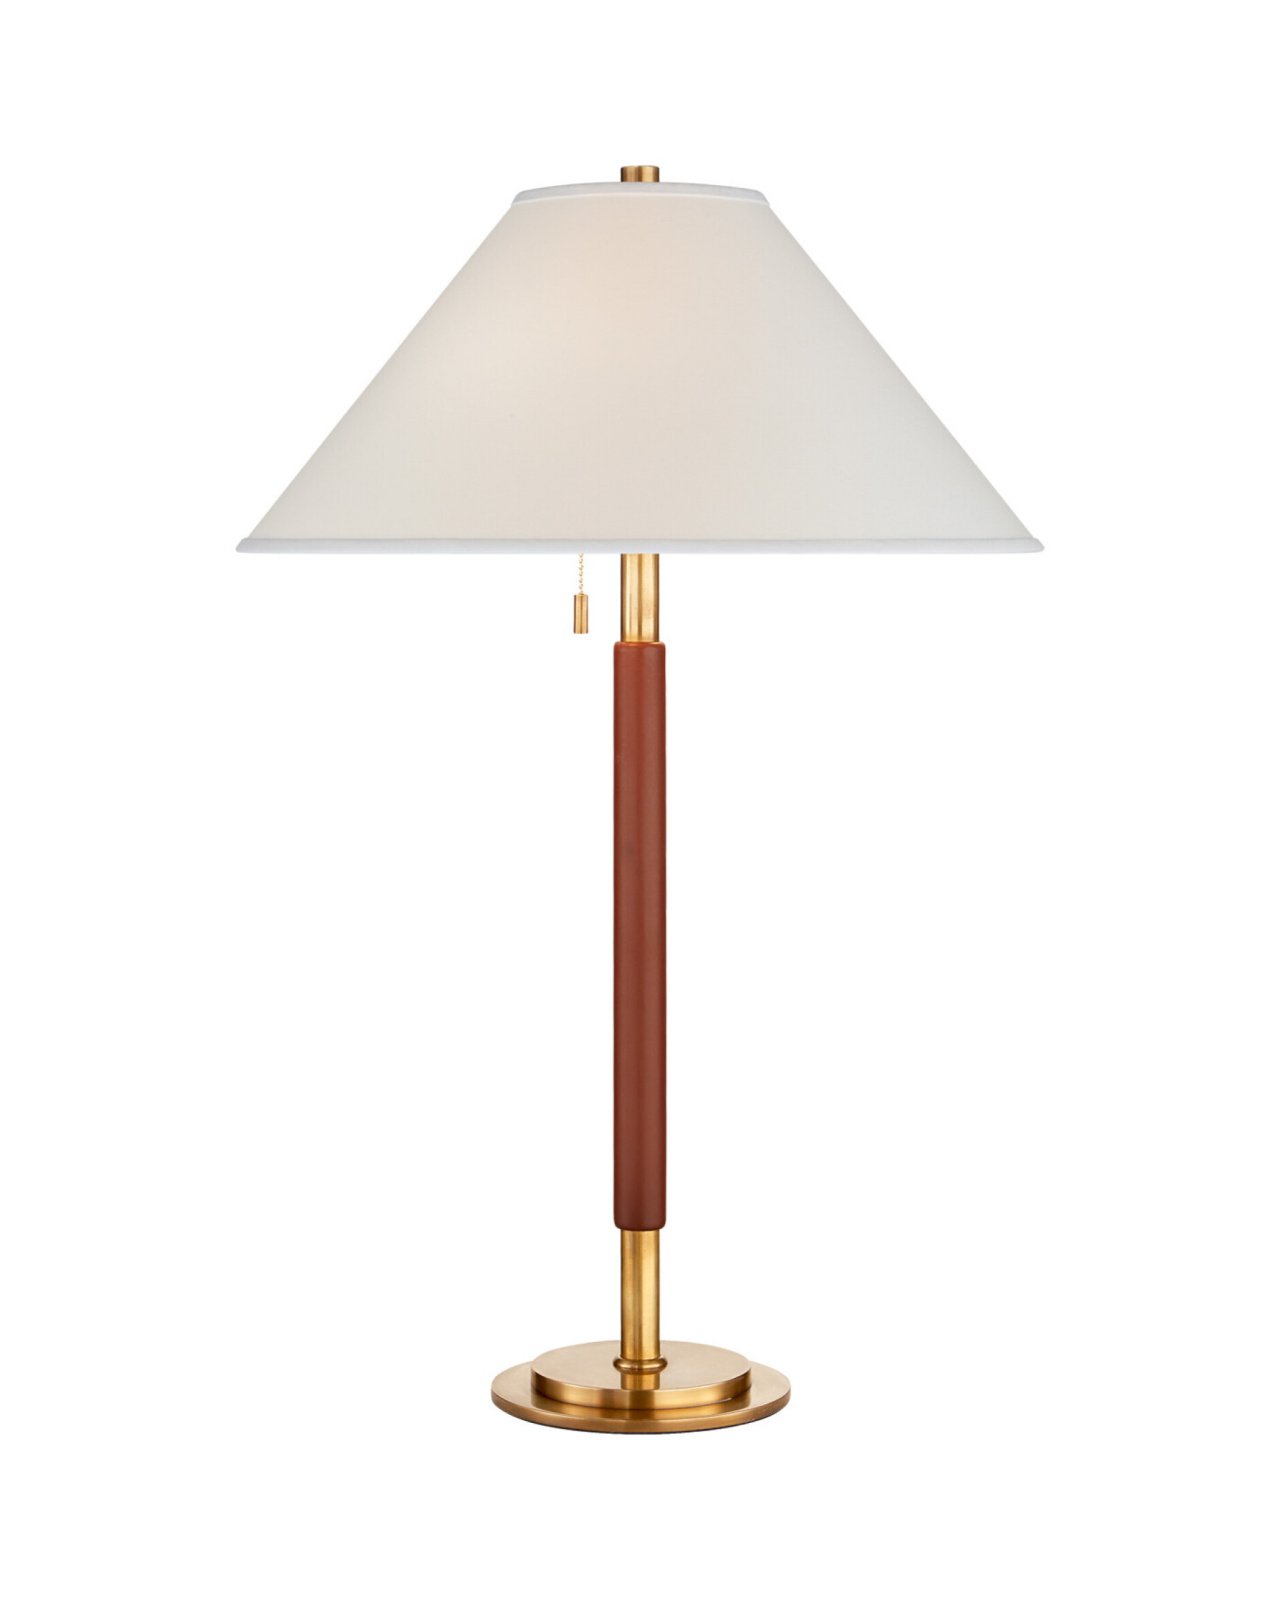 Garner bordslampa mässing/brun